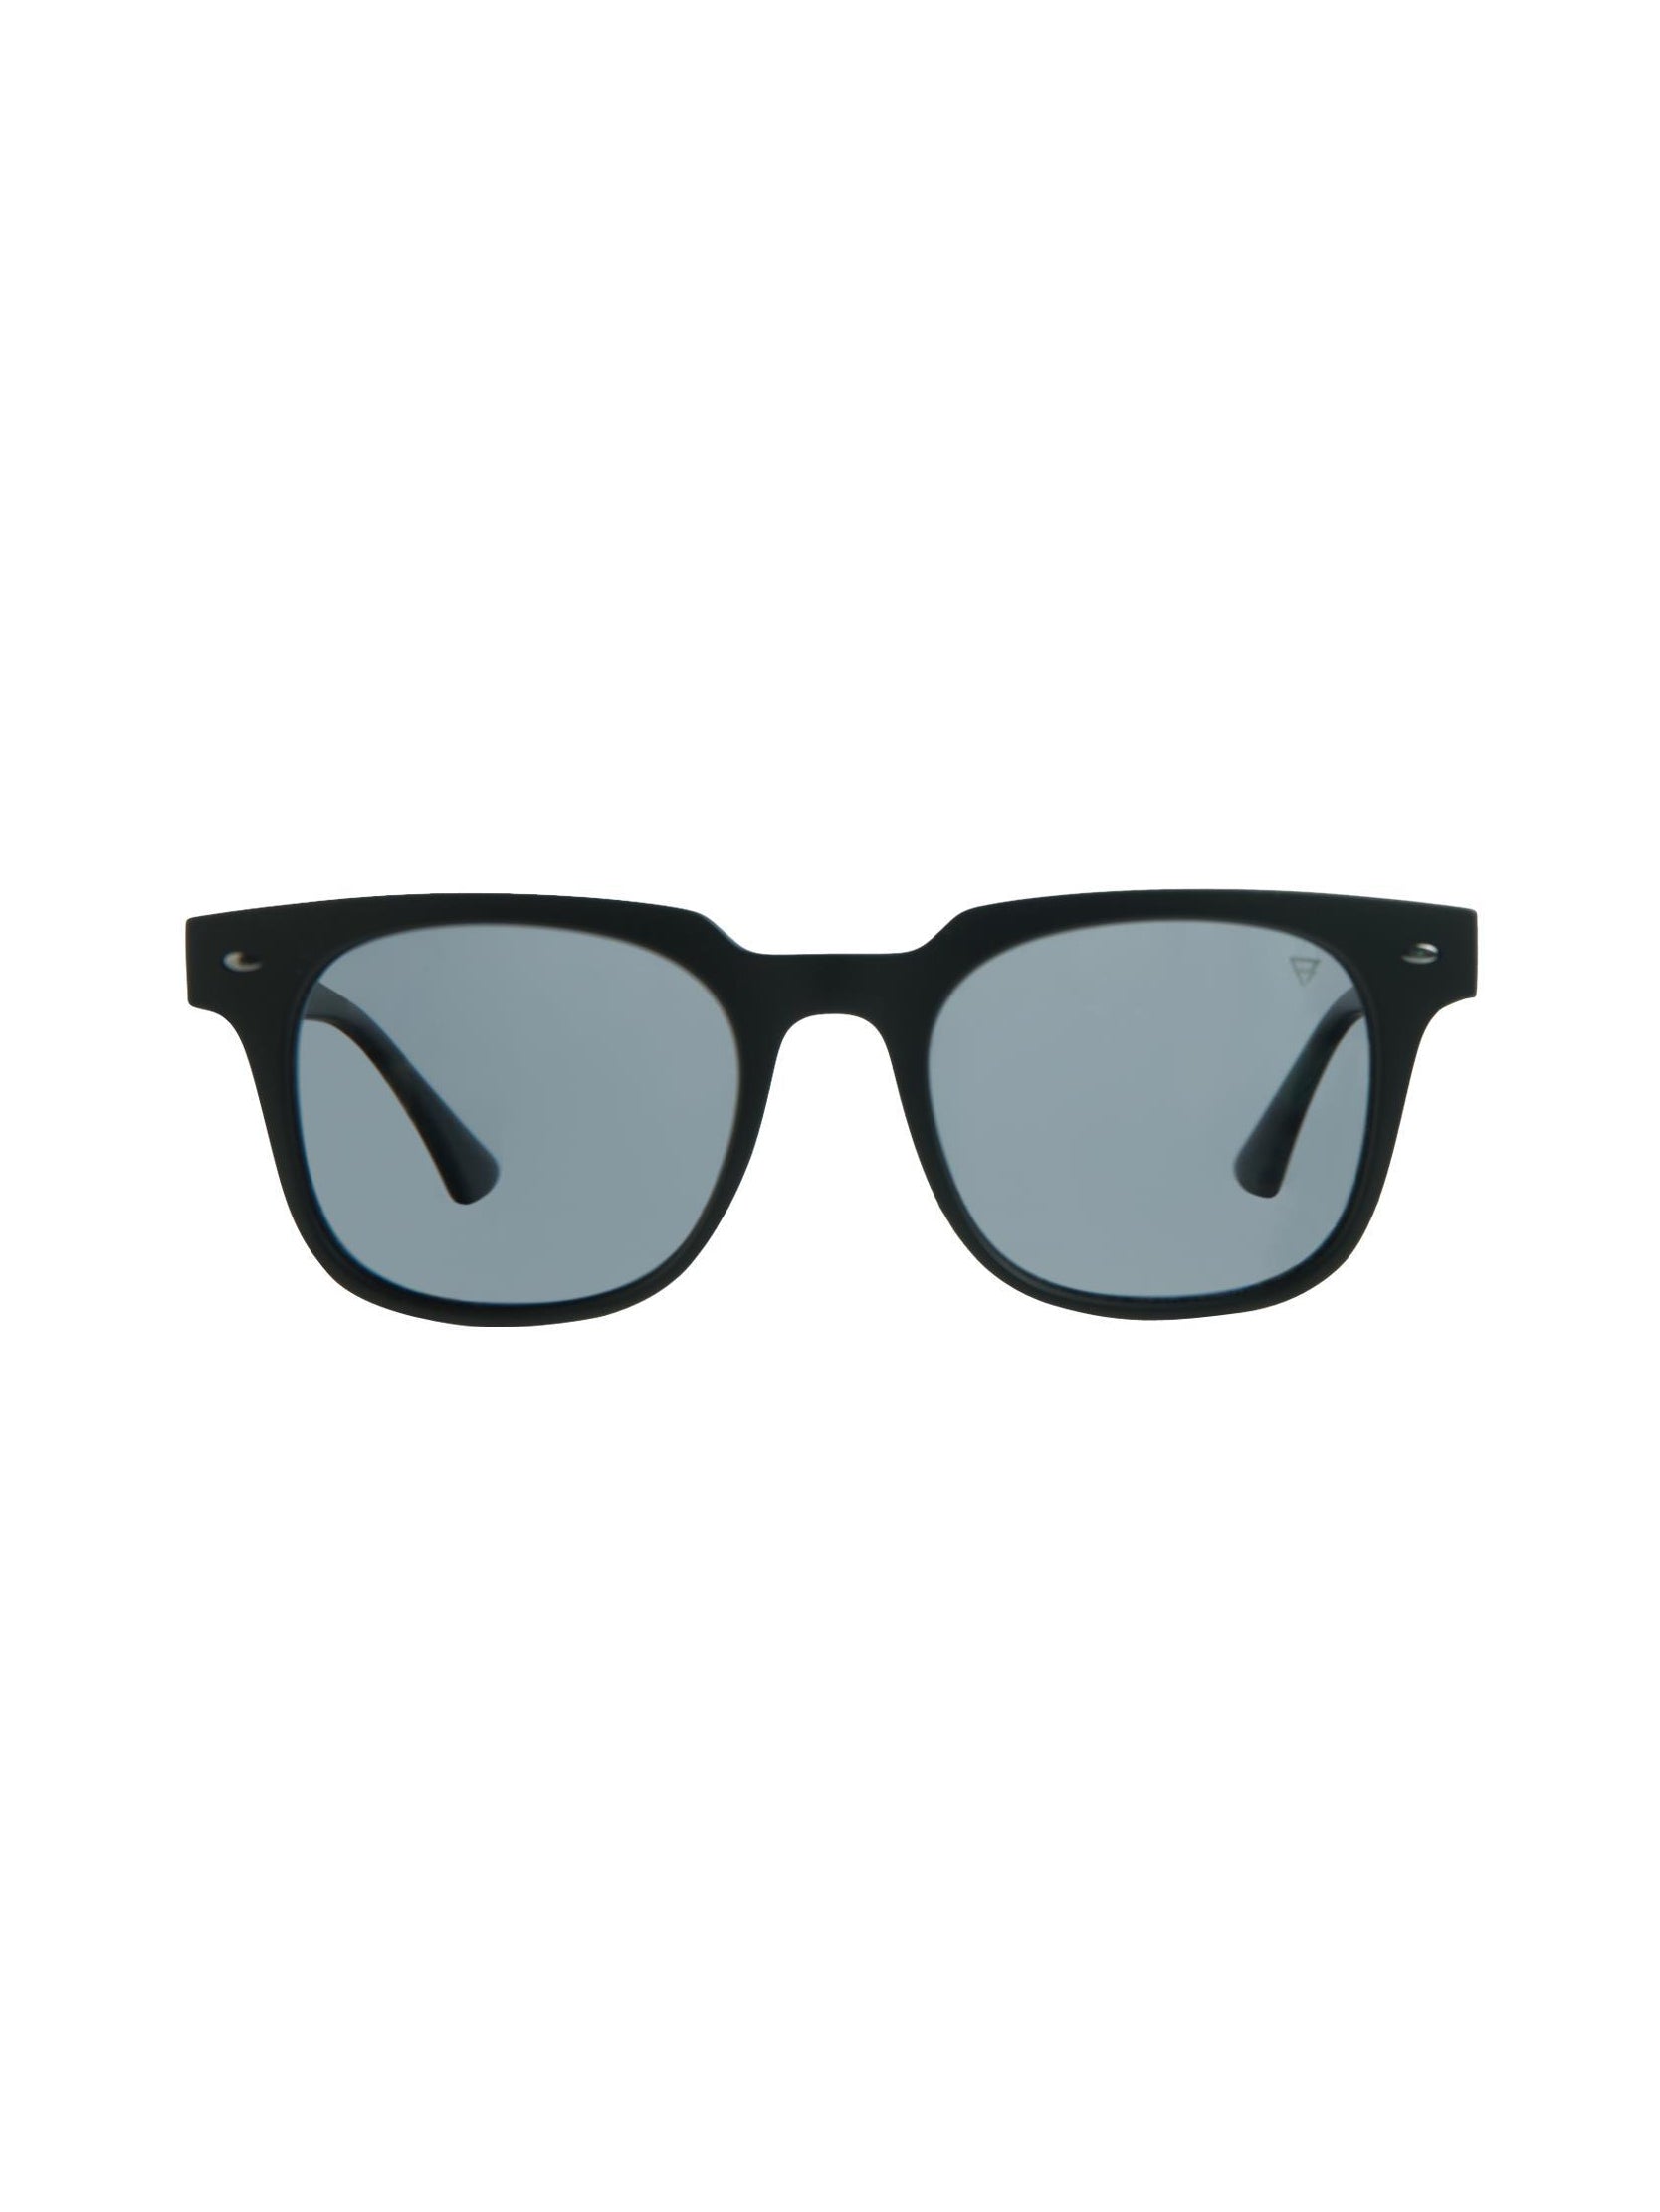 Kerio 2 Unisex Sunglasses | Black